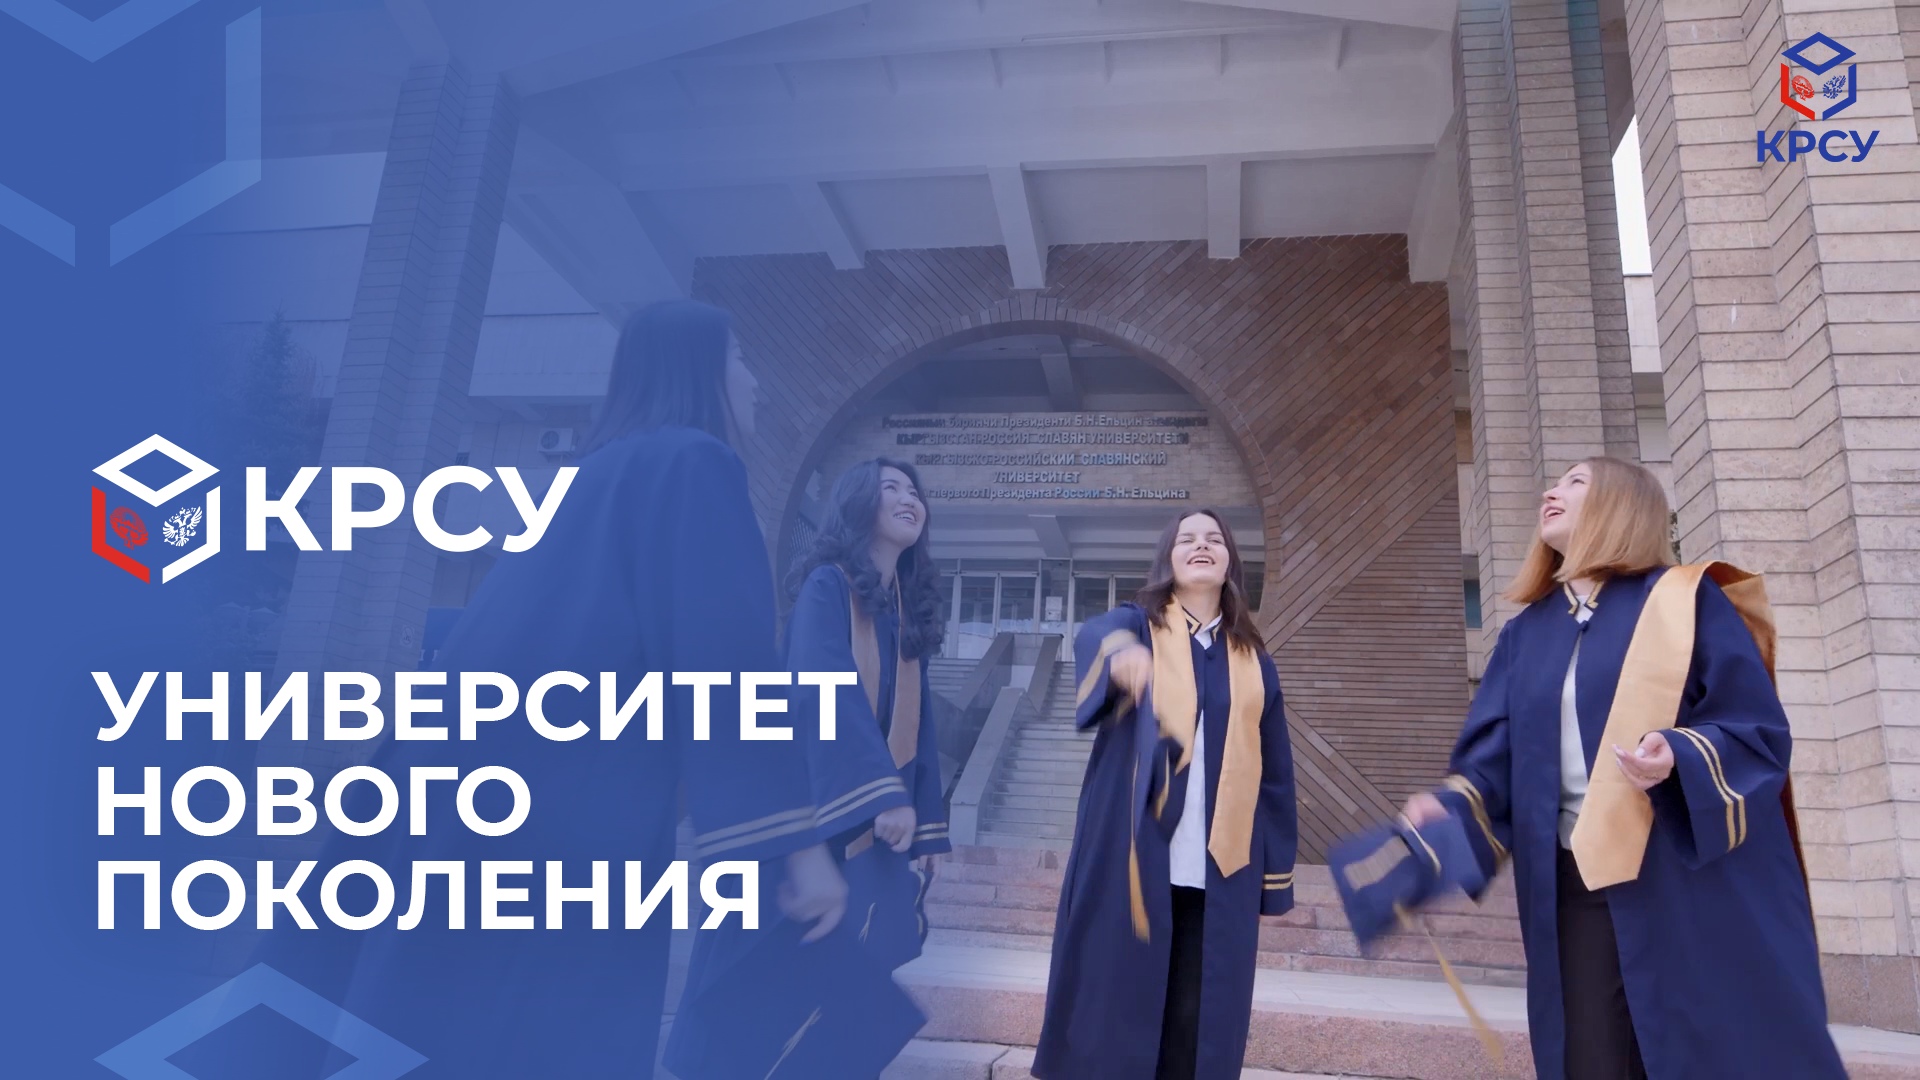 КРСУ – университет нового поколения!